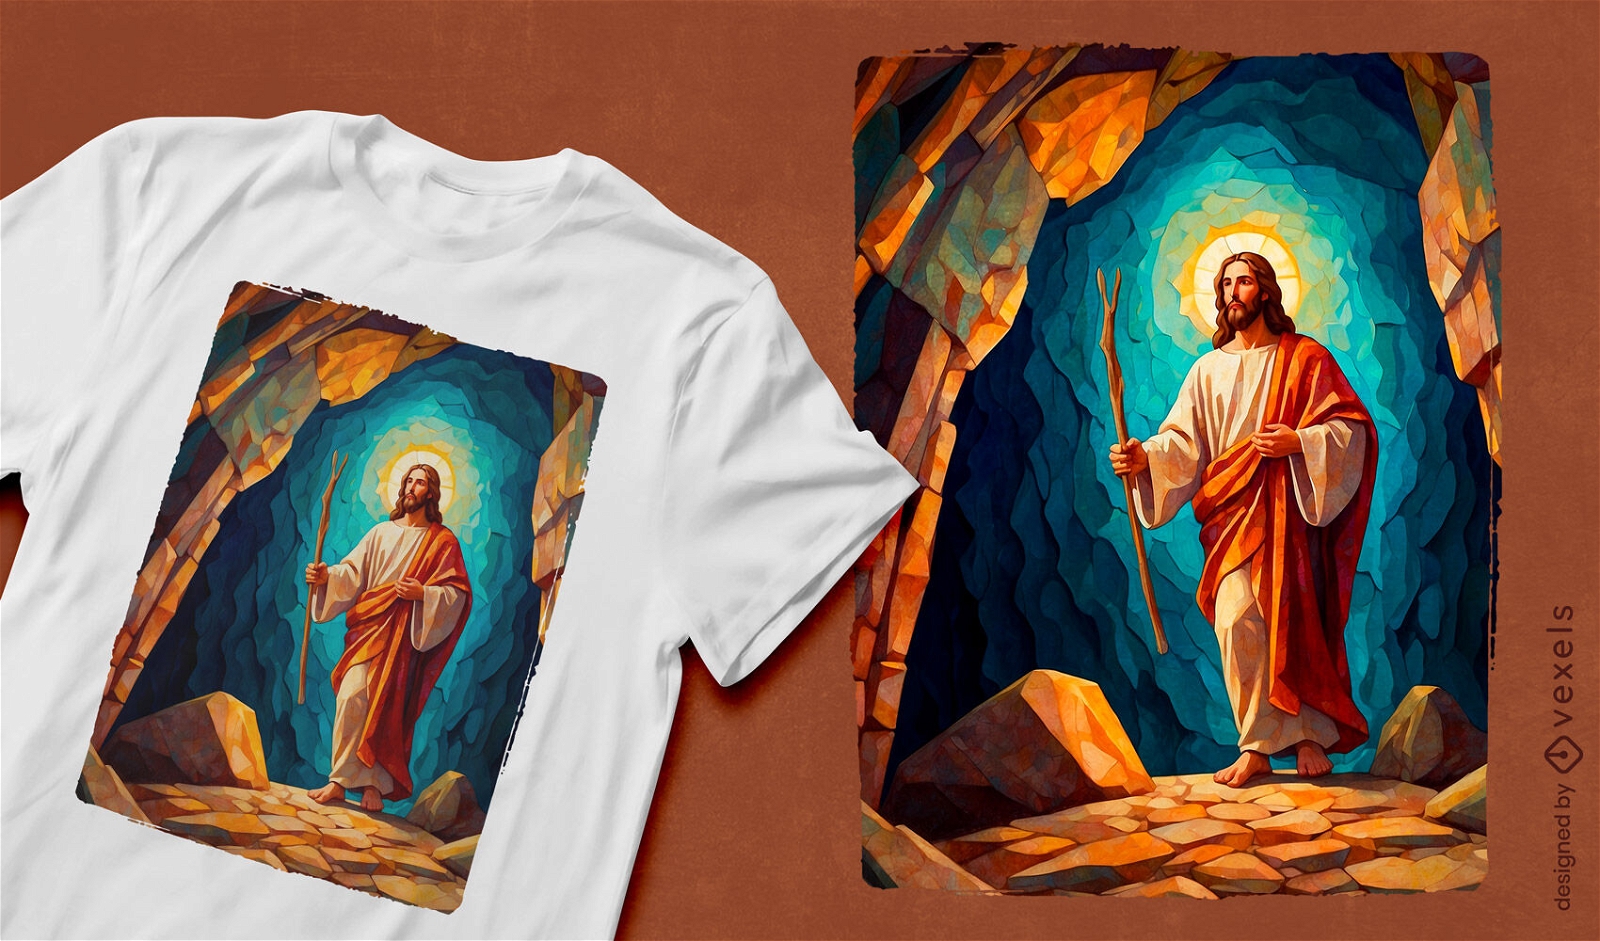 Diseño de camiseta con retrato de escena de Jesucristo.